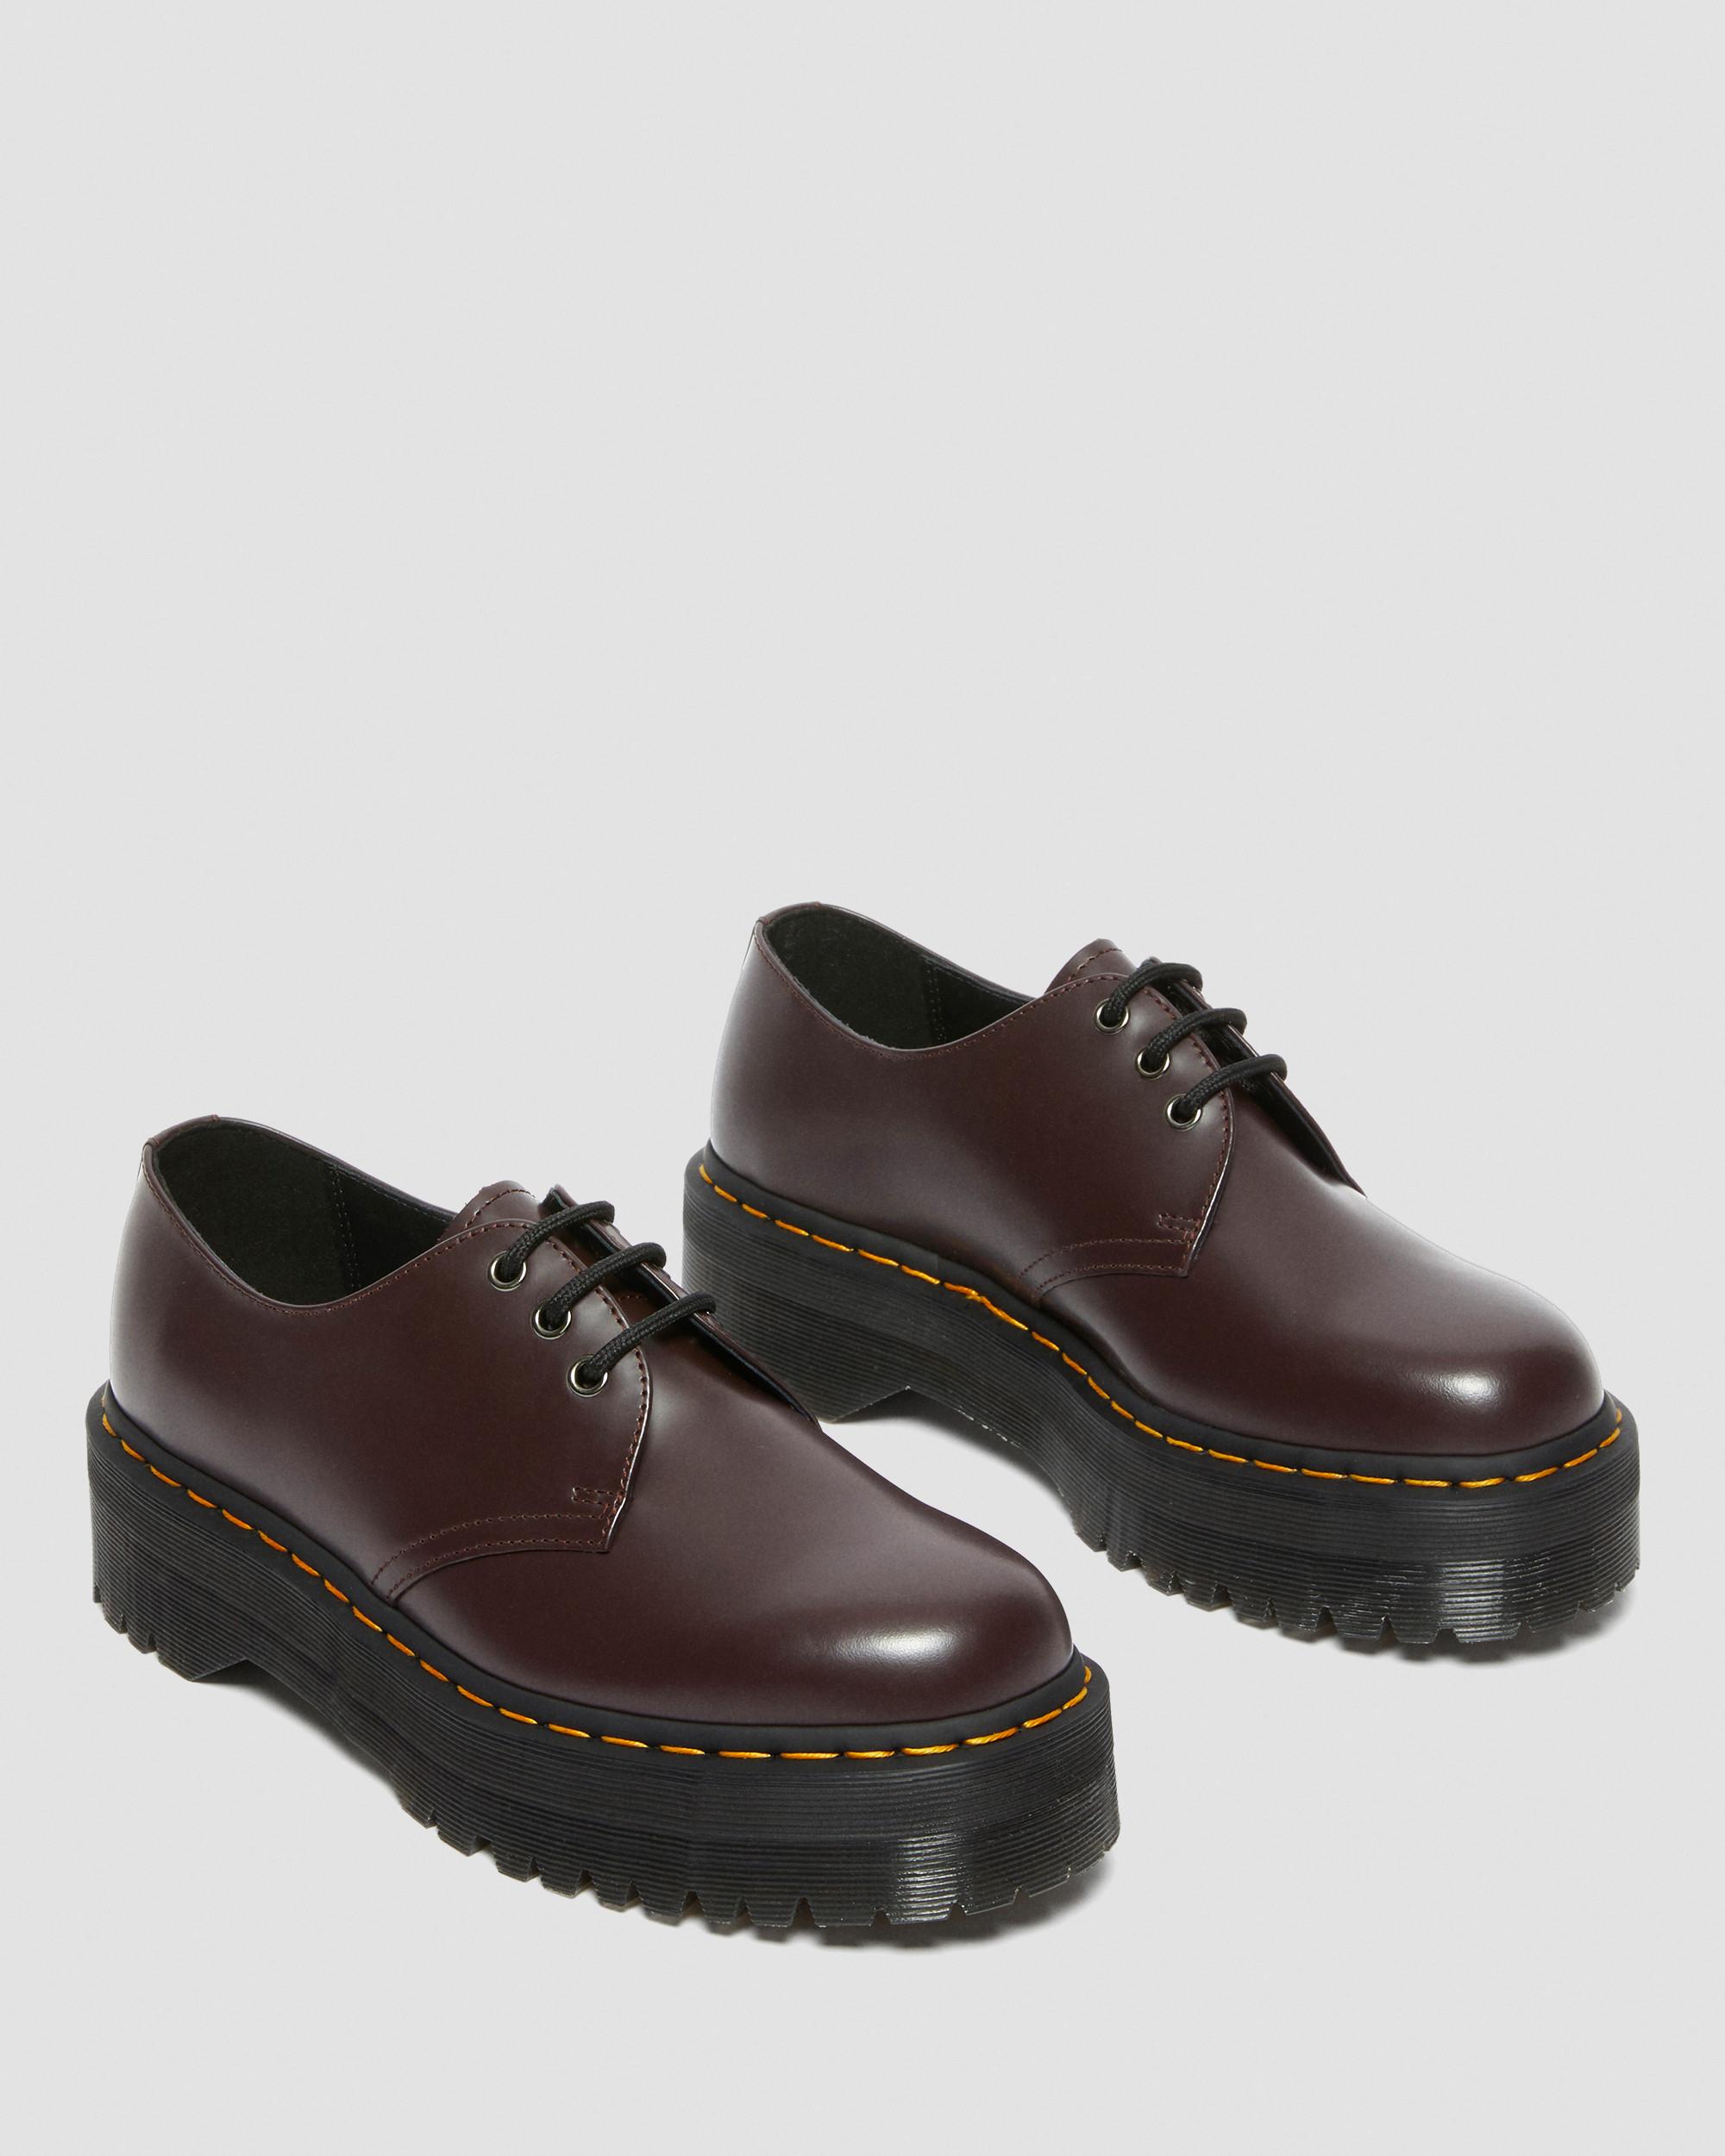 DR MARTENS 1461 Smooth Leather Platform Shoes